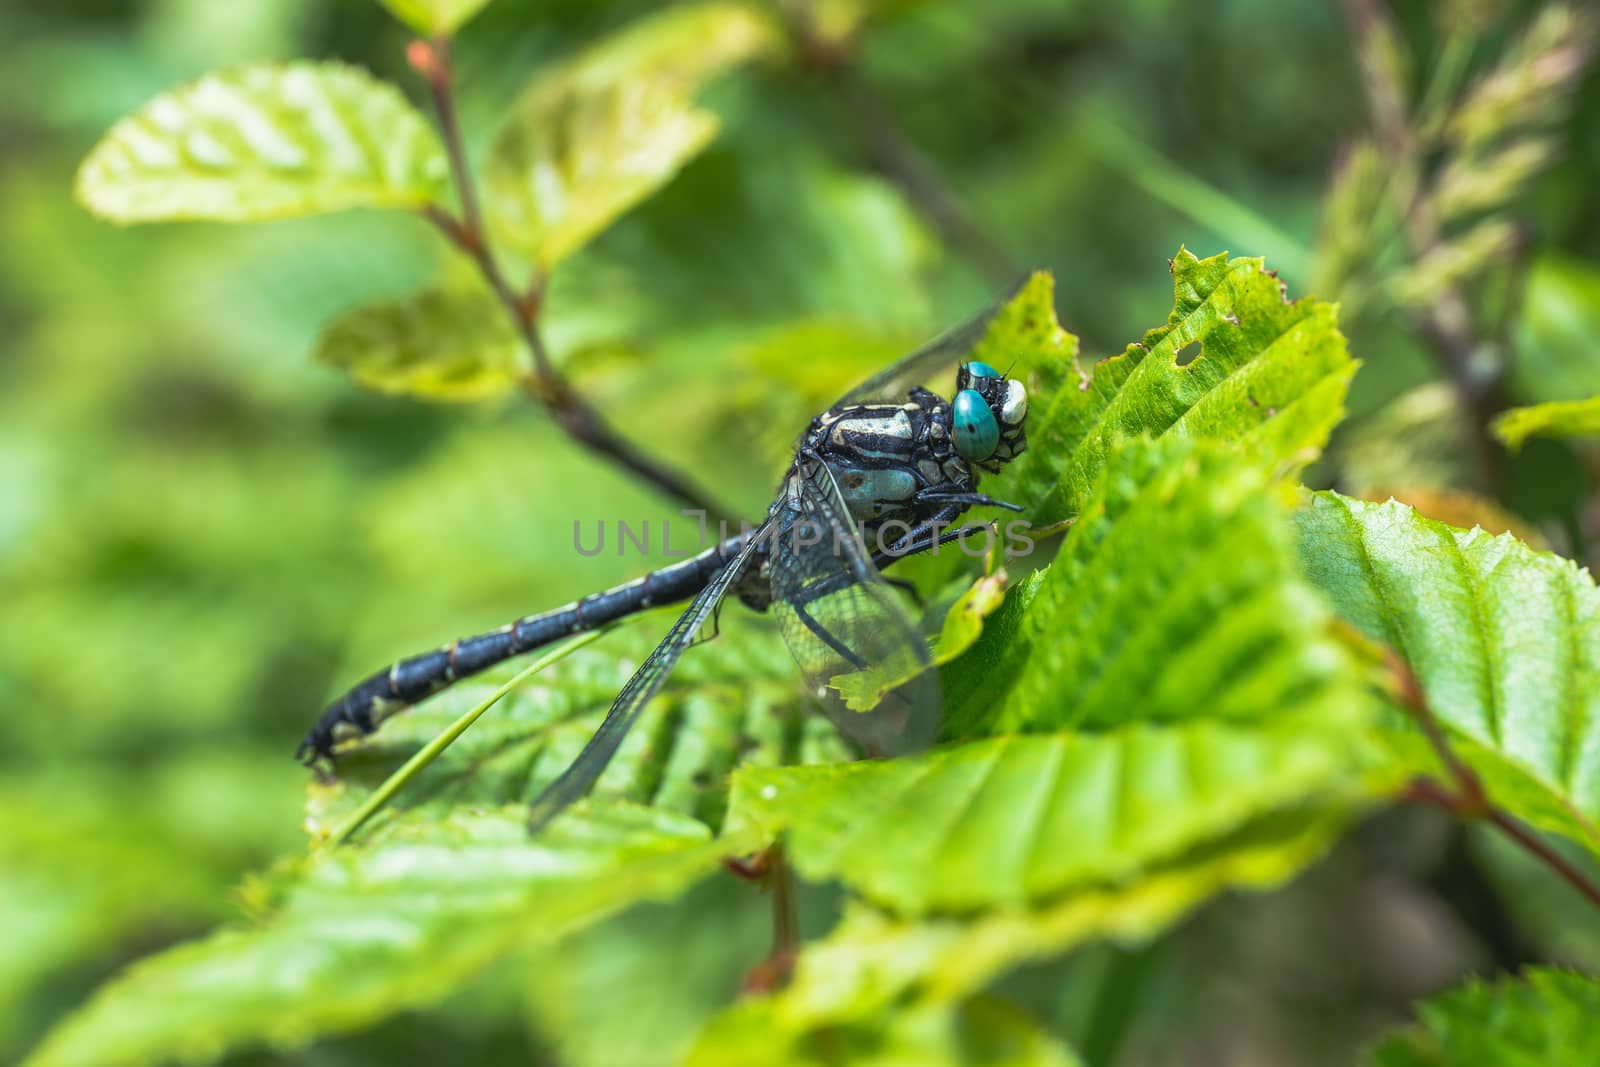 Dragonfly sitting on a leaf in sunny day - Aeshna cyanea by petrsvoboda91